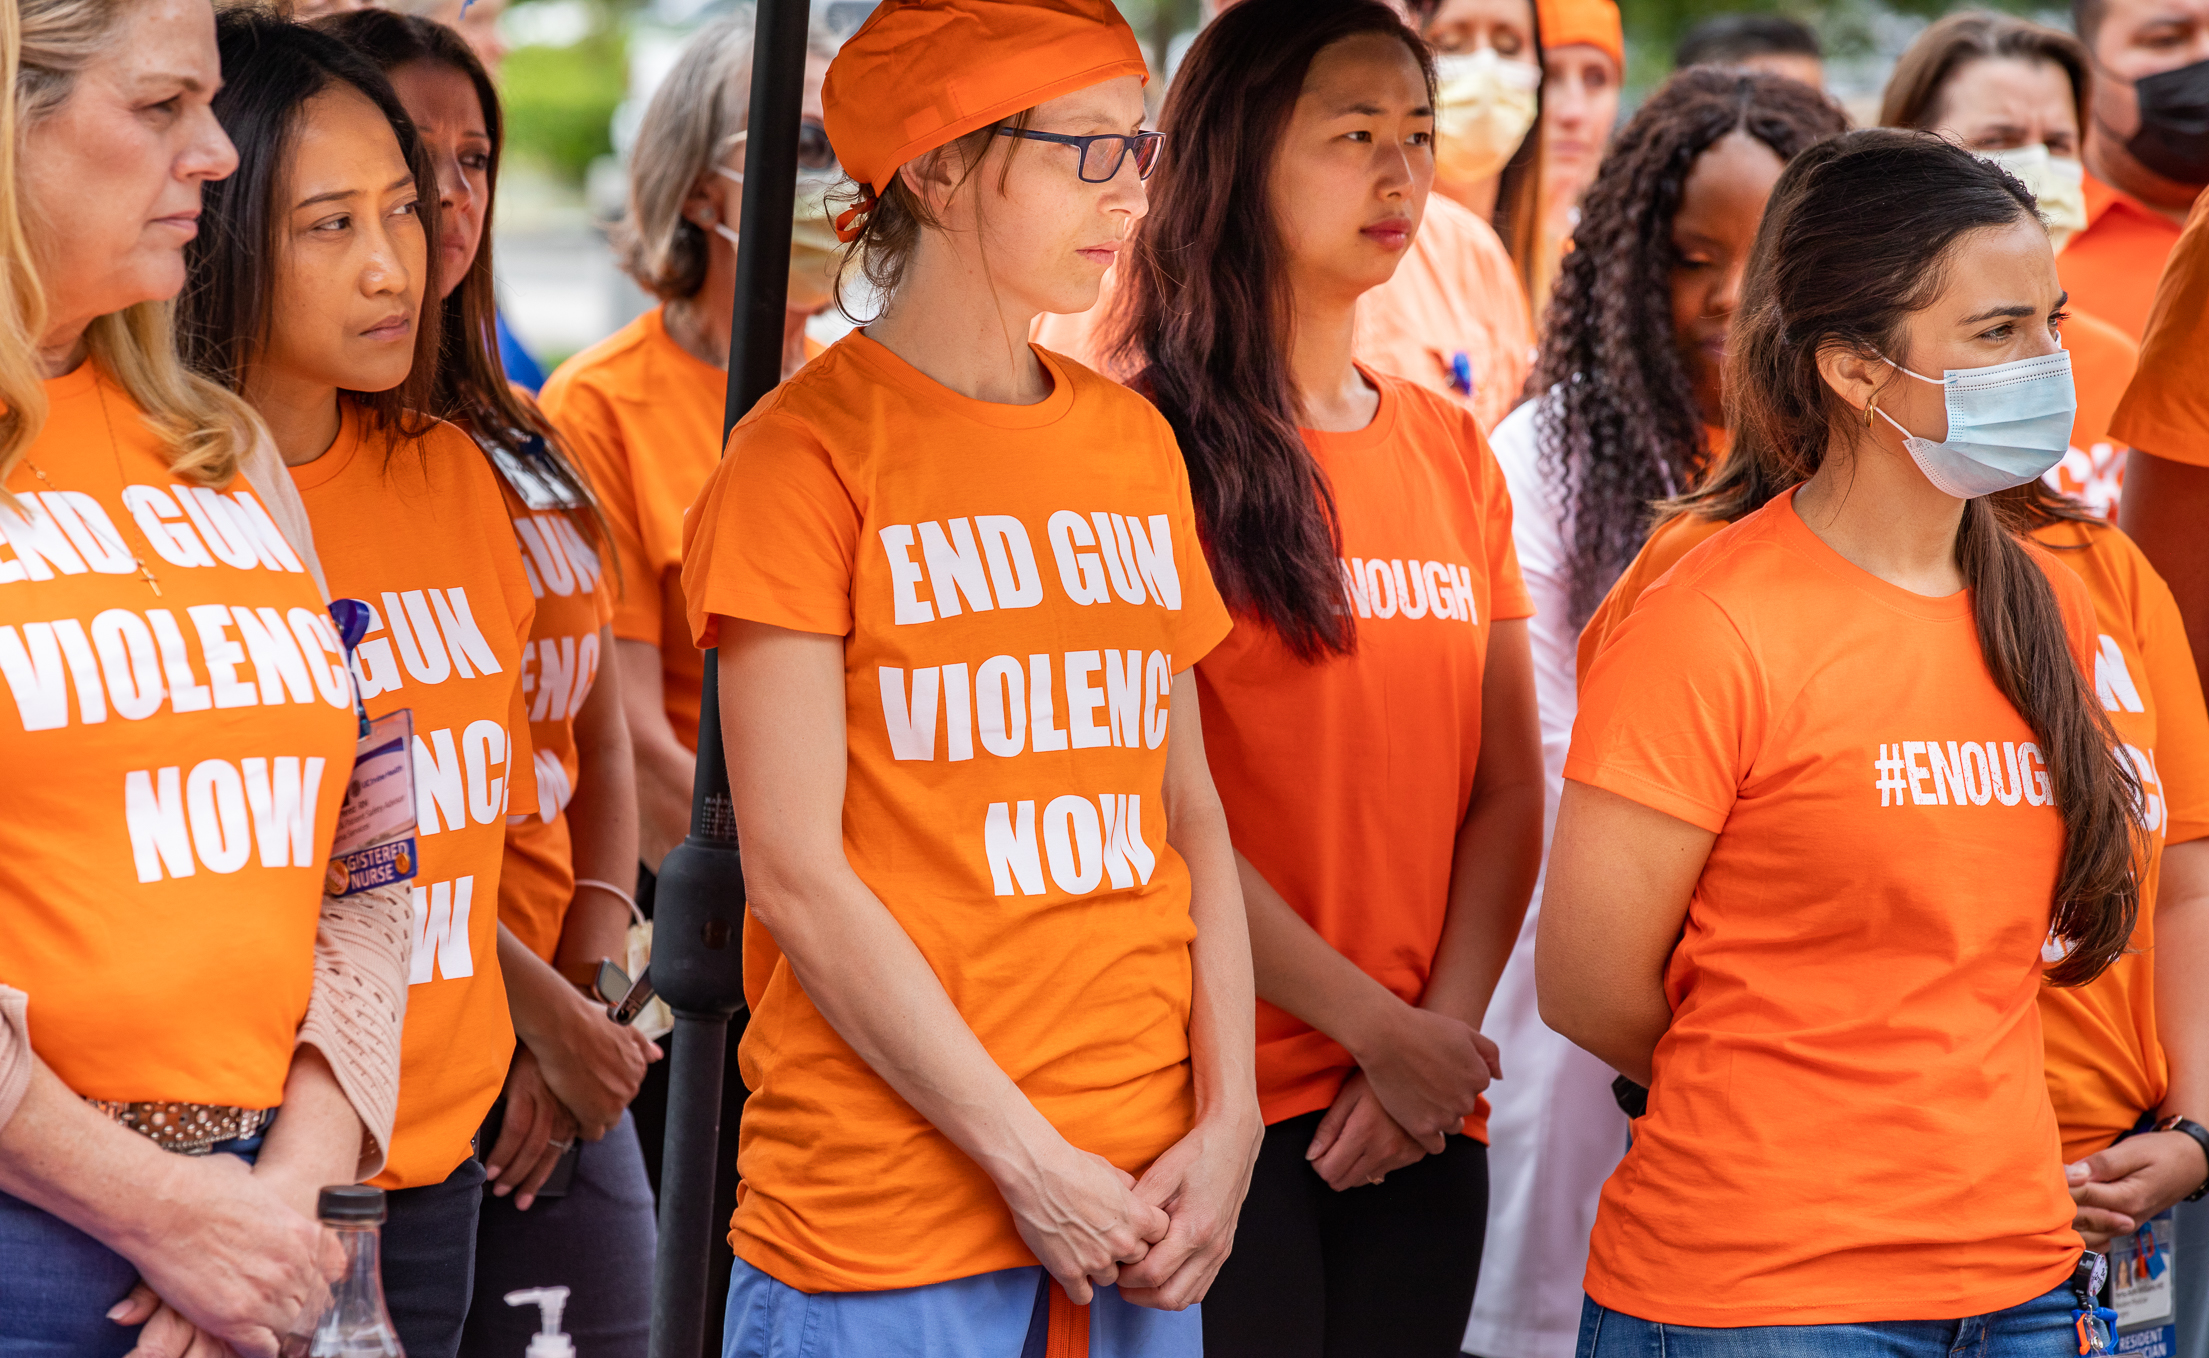 Wear Orange Kids Tee – Everytown for Gun Safety